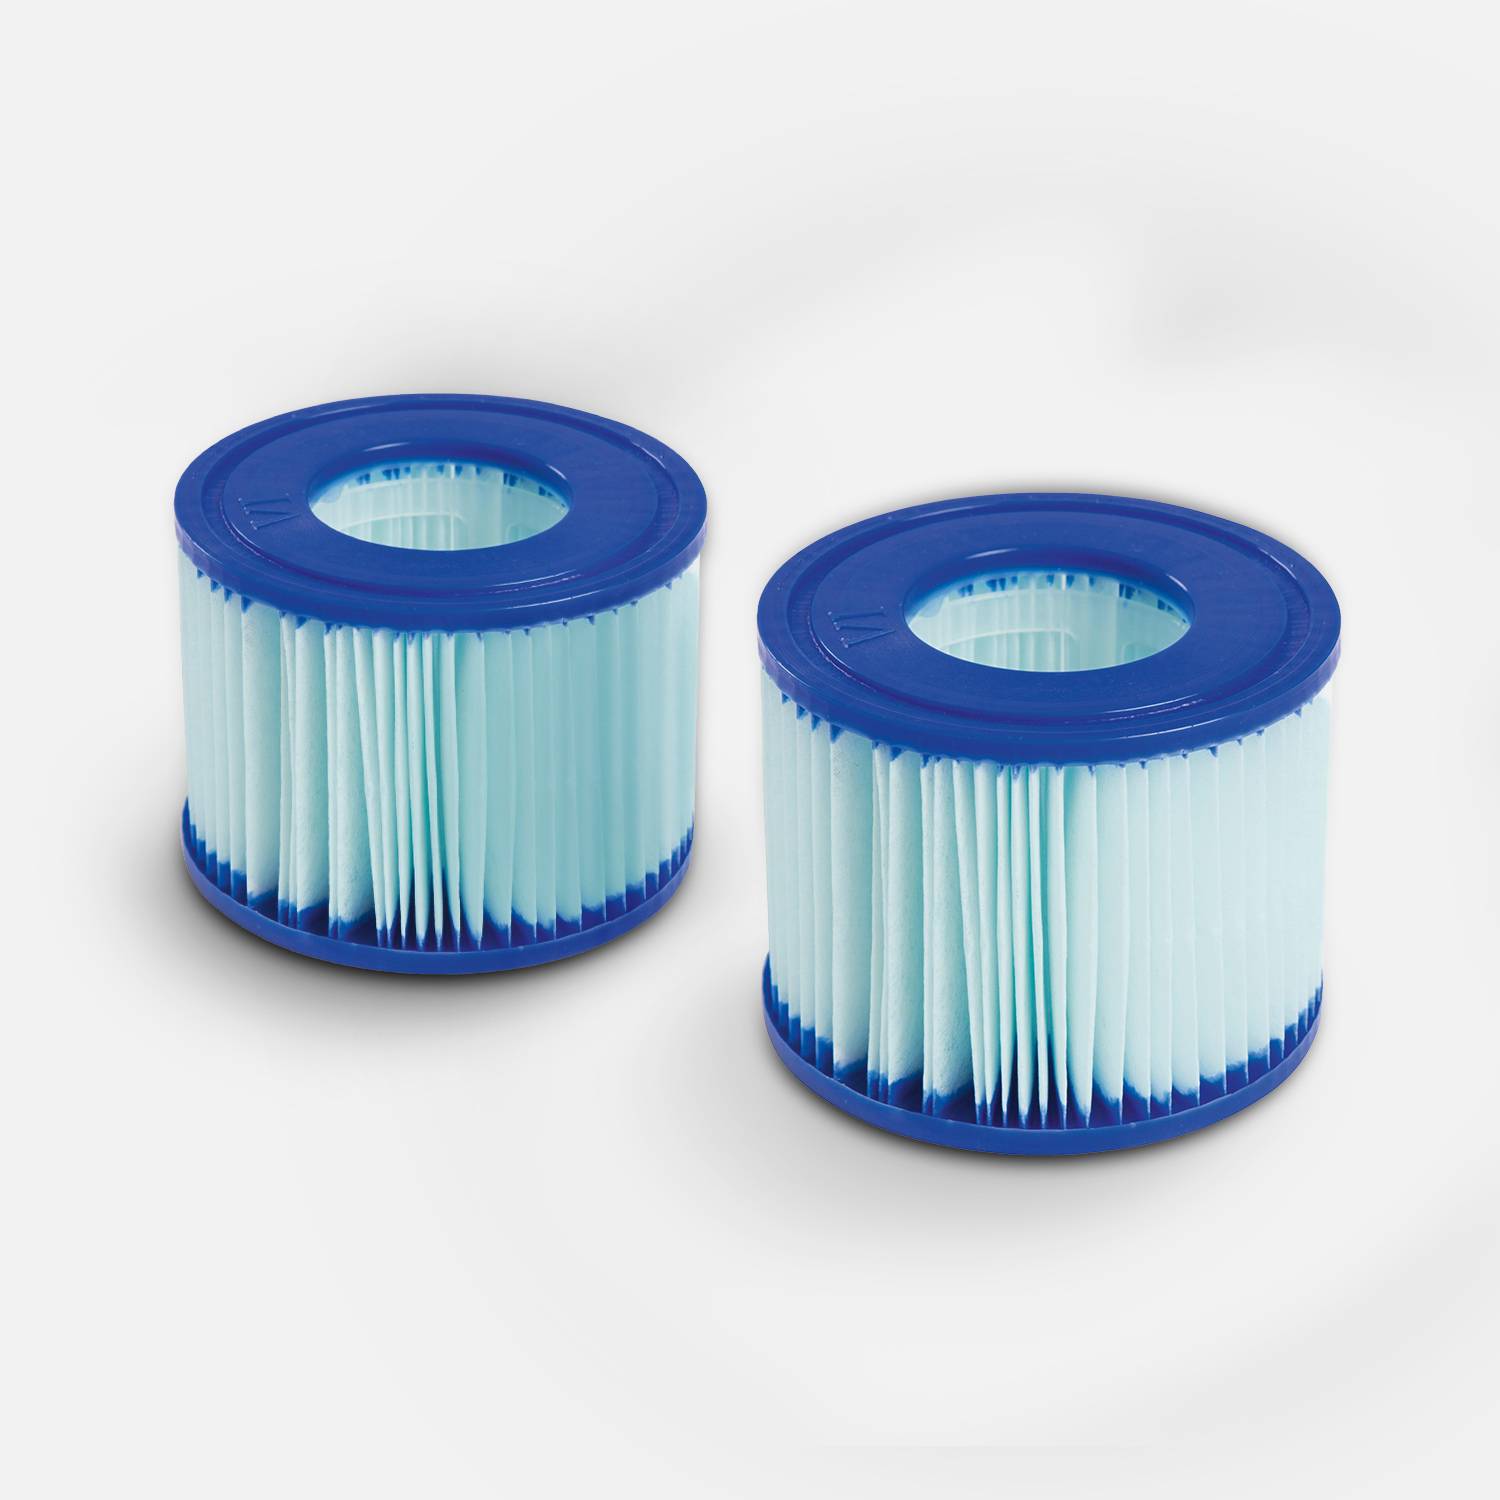 Lot de 2 filtres antimicrobiens LAY-Z SPA pour spas gonflables – compatible avec SPA Milan – 2 cartouches filtrantes de remplacement pour spa gonflable LAY-Z SPA Photo2